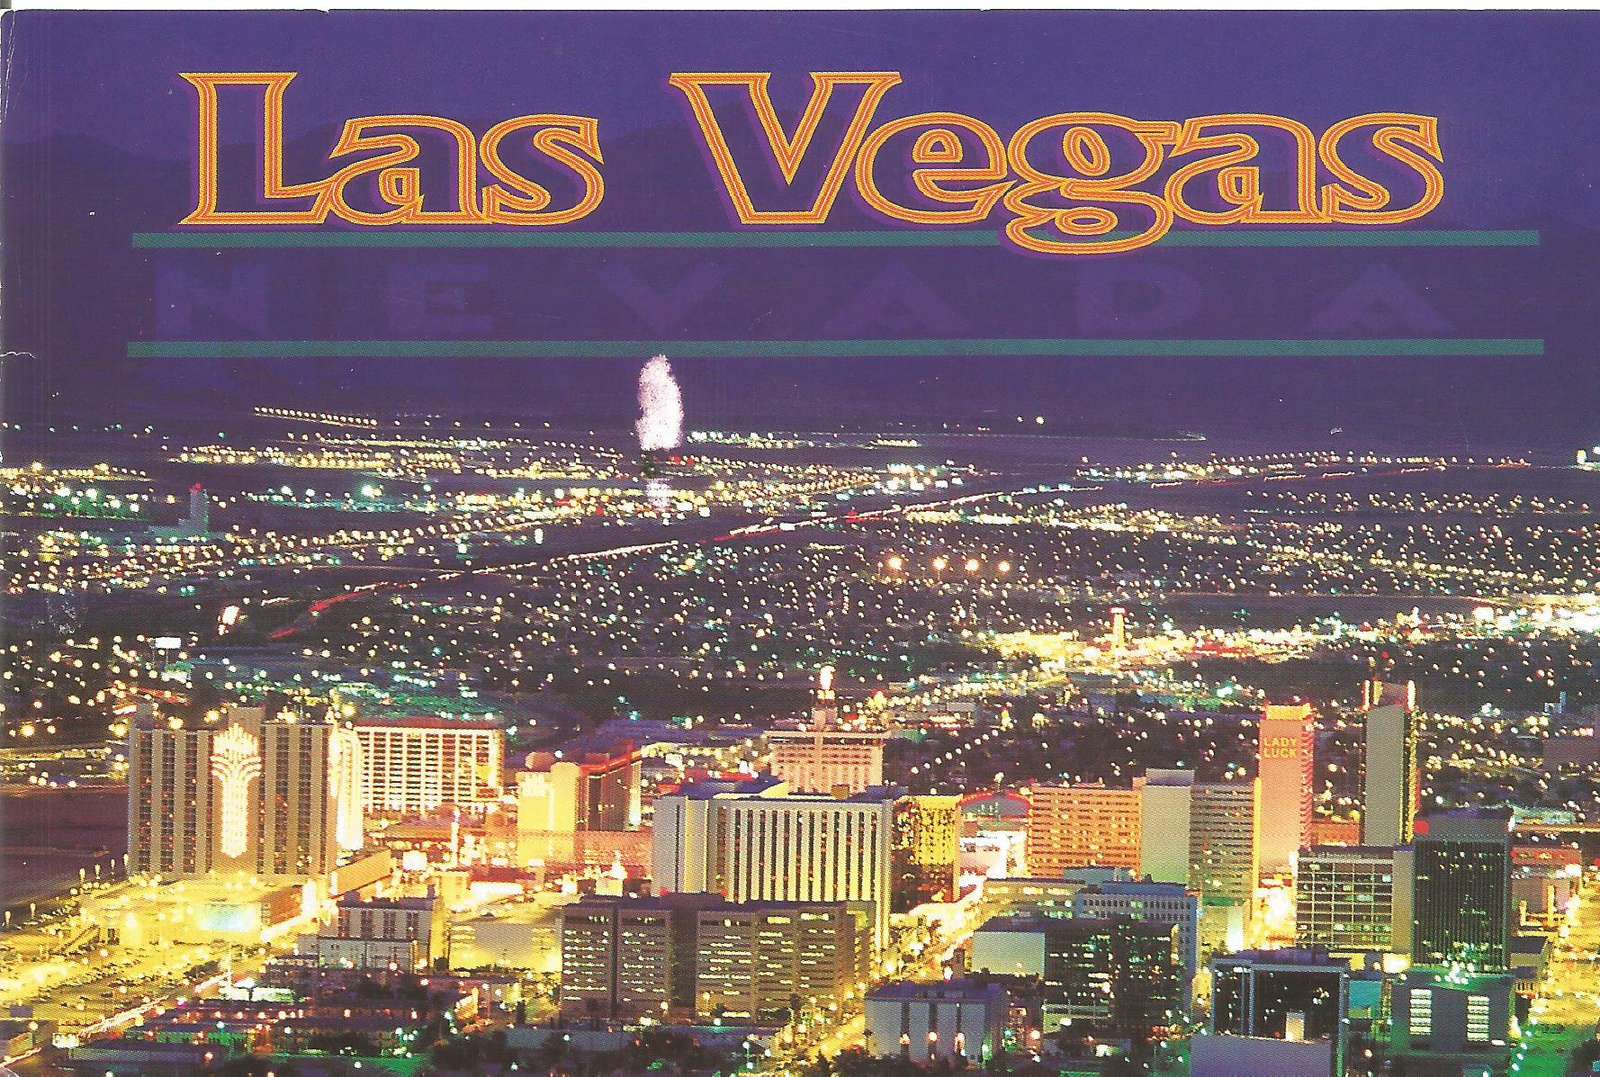 Las Vegas is a casino city online puzzle